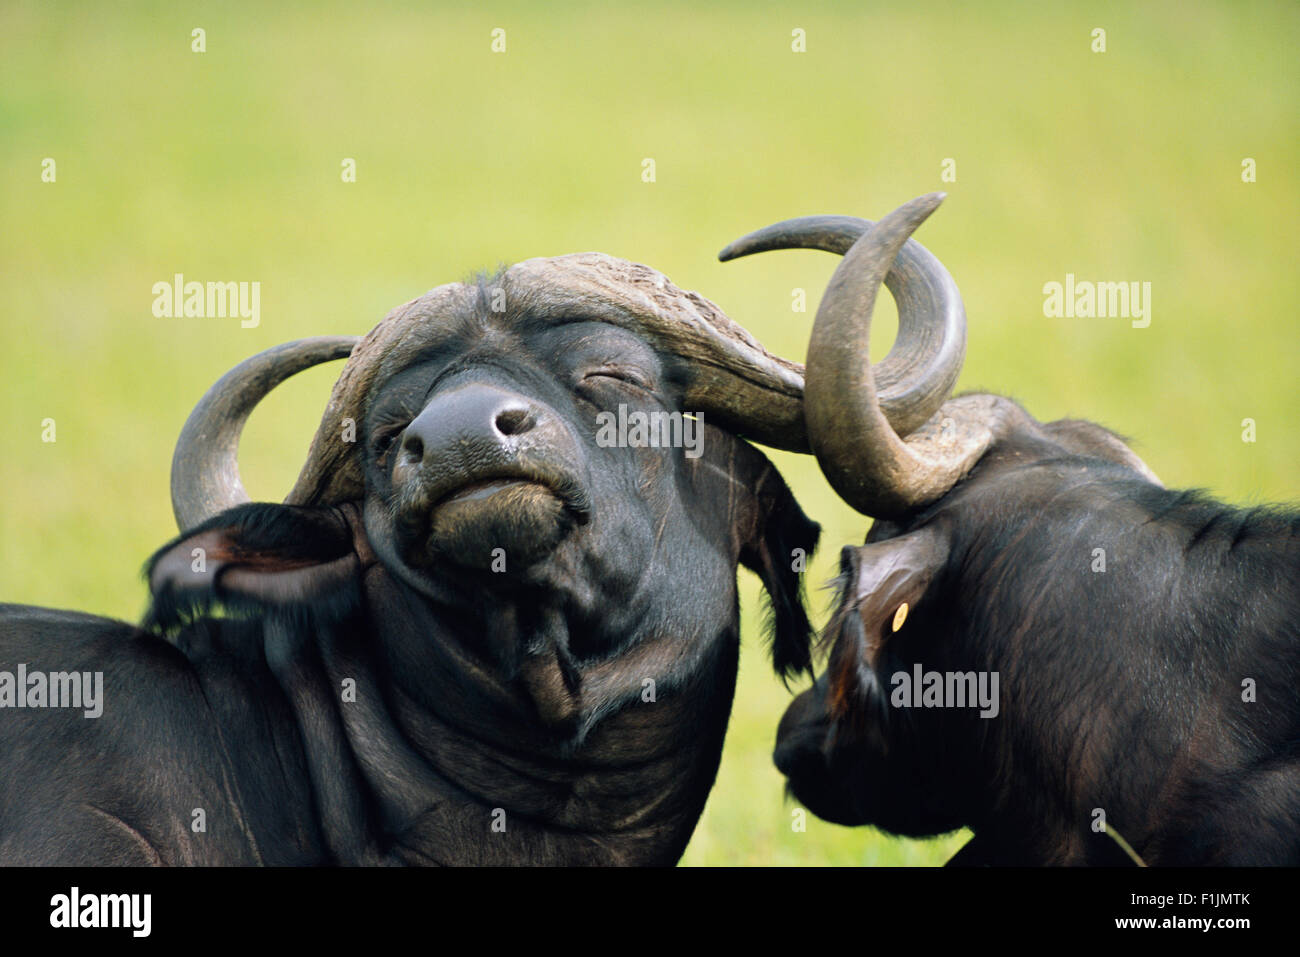 Cape Buffalos Stock Photo